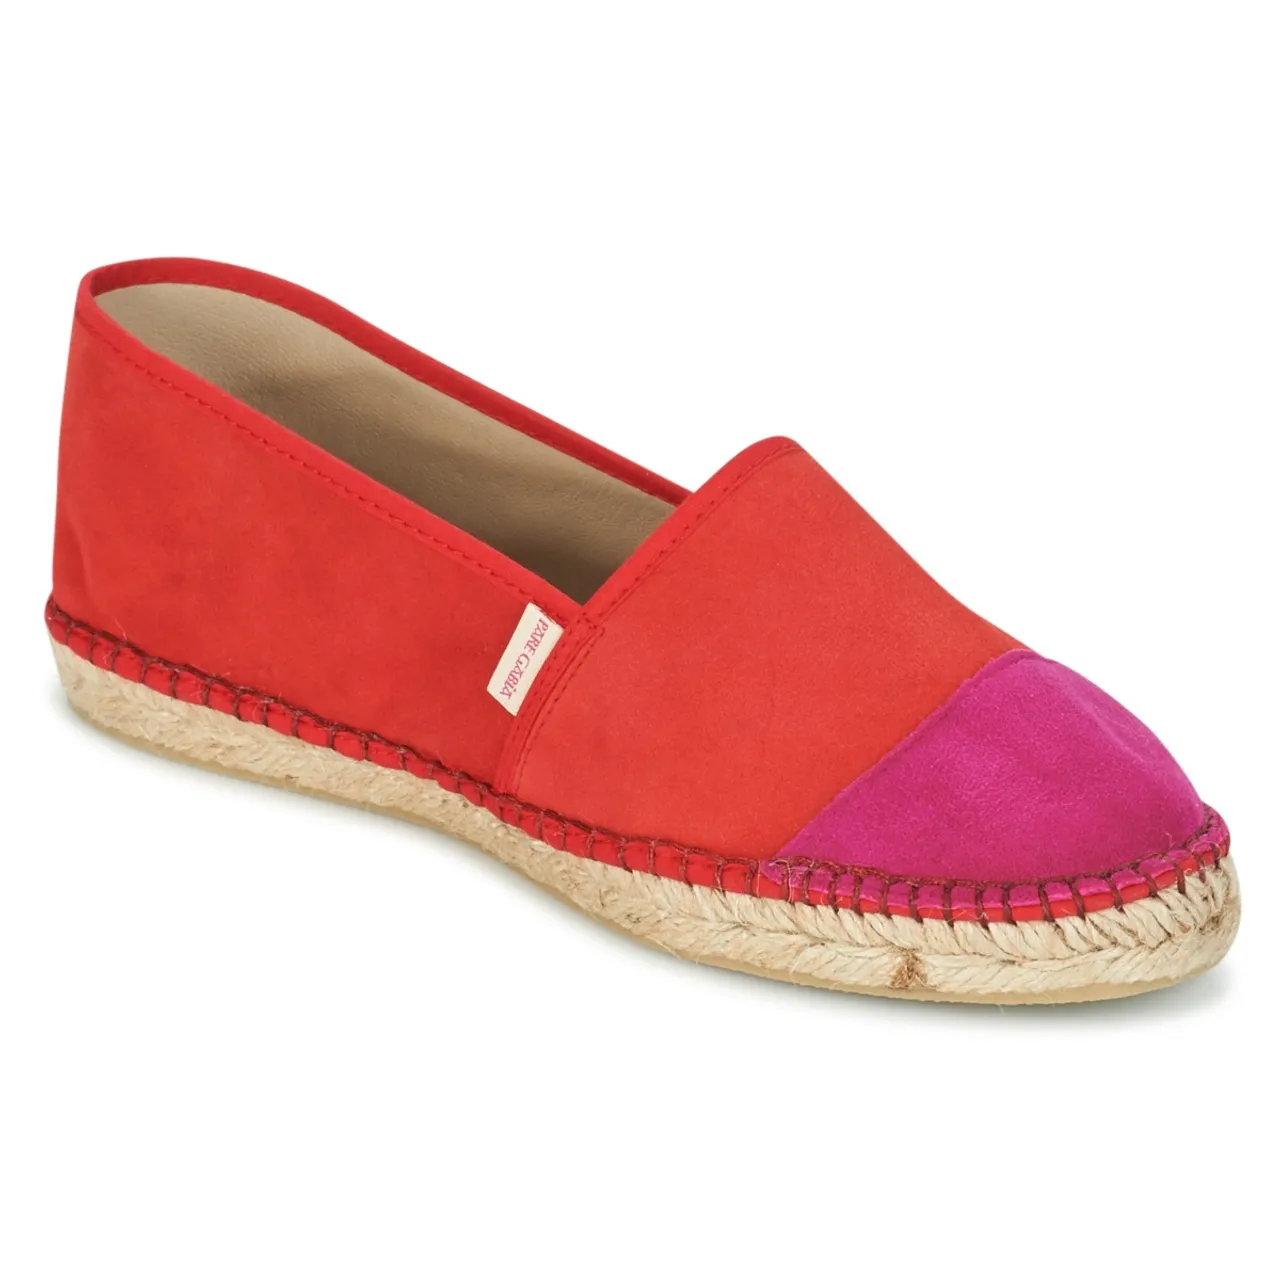 Pare Gabia  VP PREMIUM  women's Espadrilles / Casual Shoes in Red